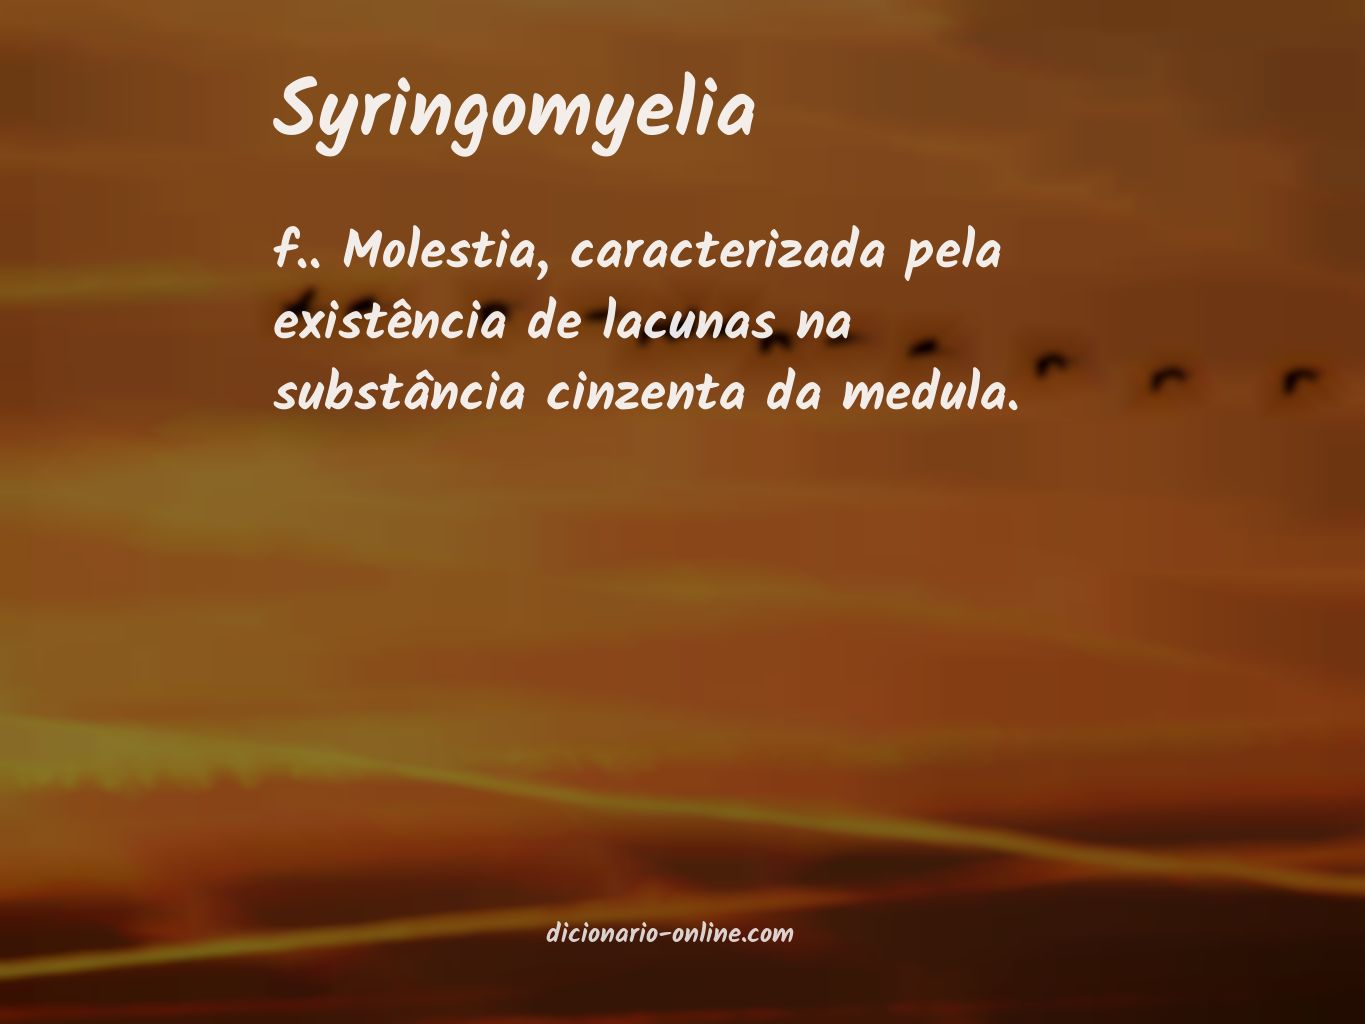 Significado de syringomyelia